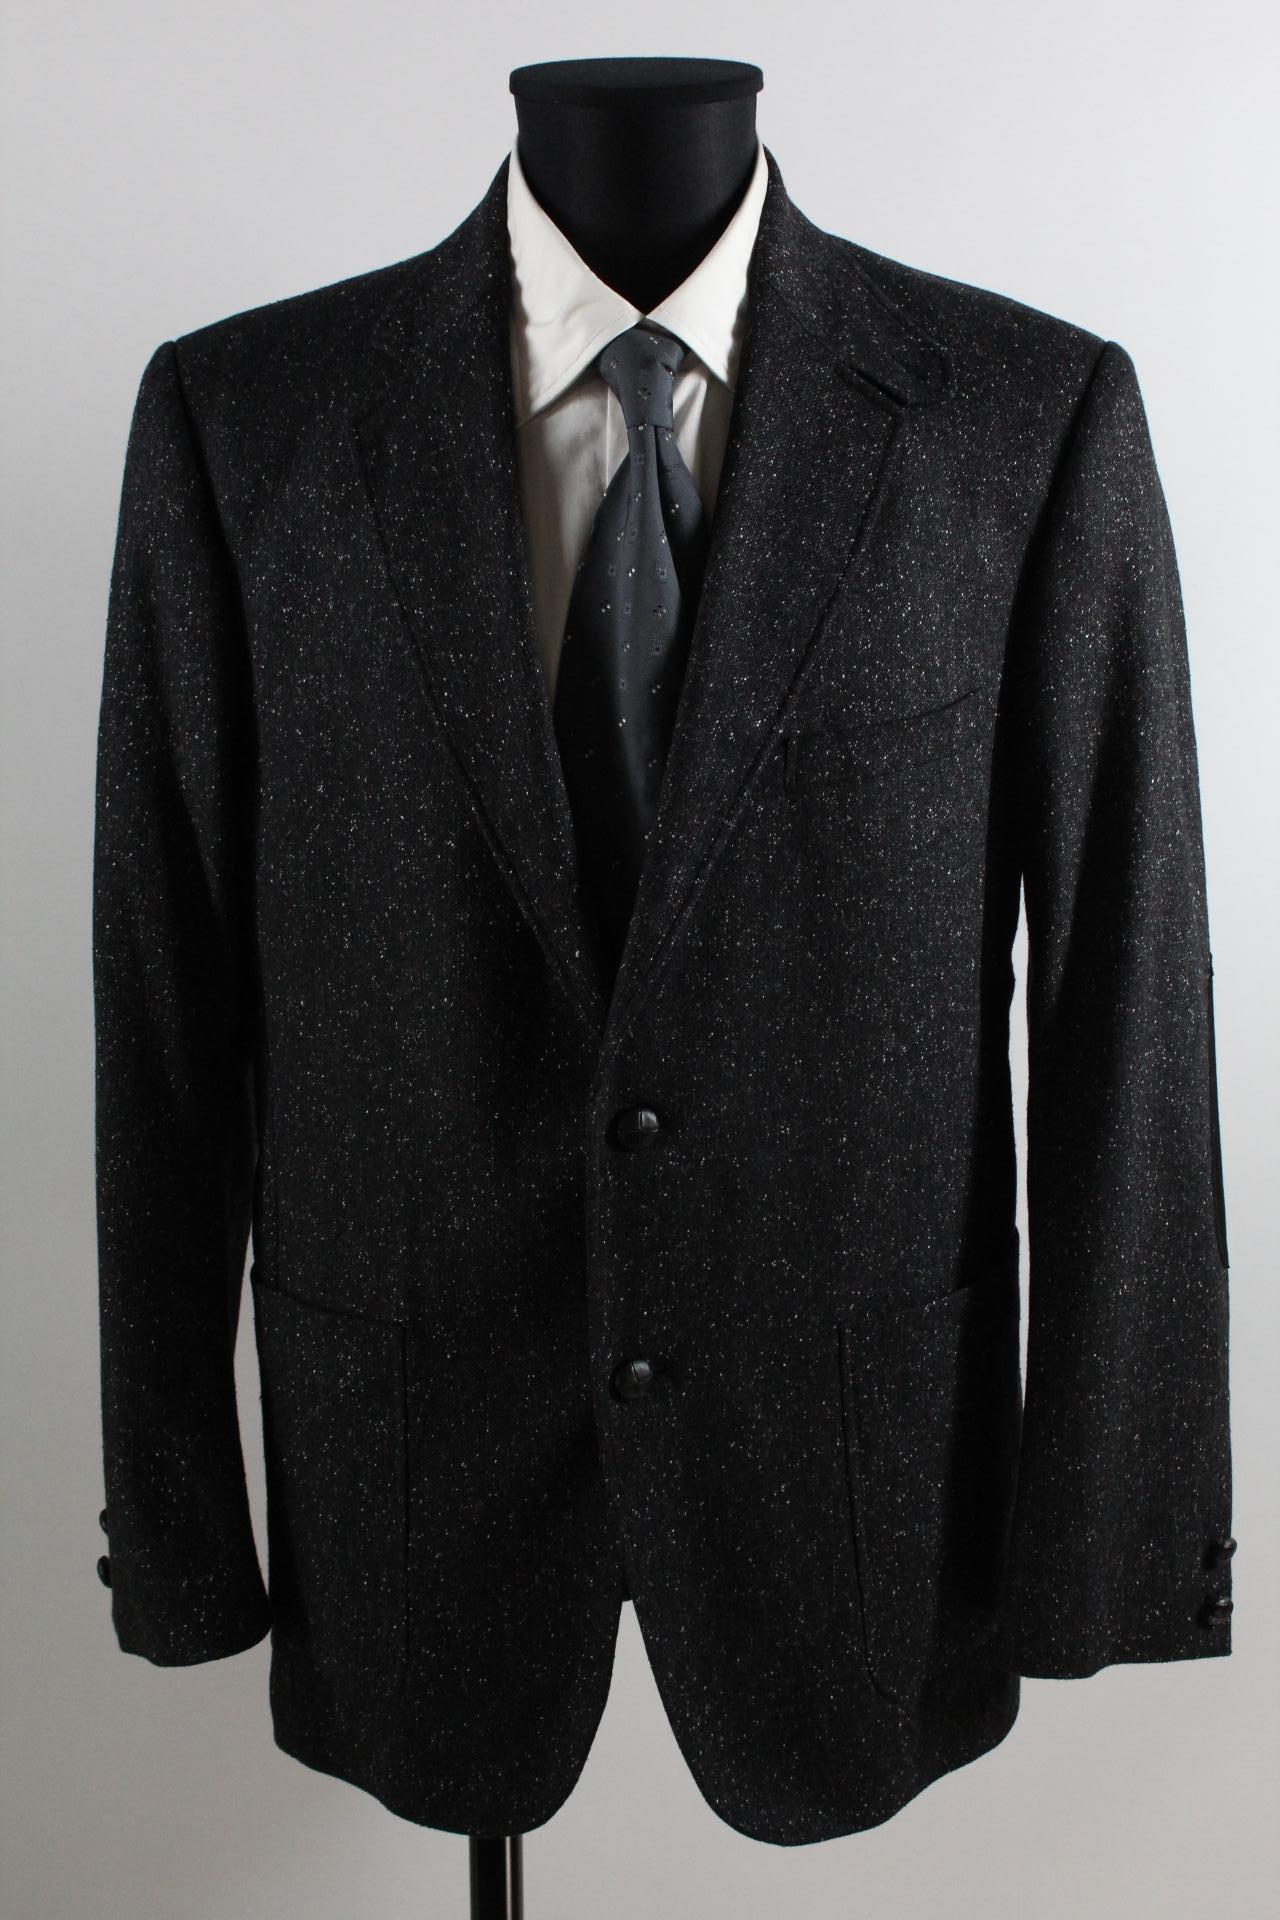 Cinque Tweed-Sakko schwarz/grau/weiß Größe 50